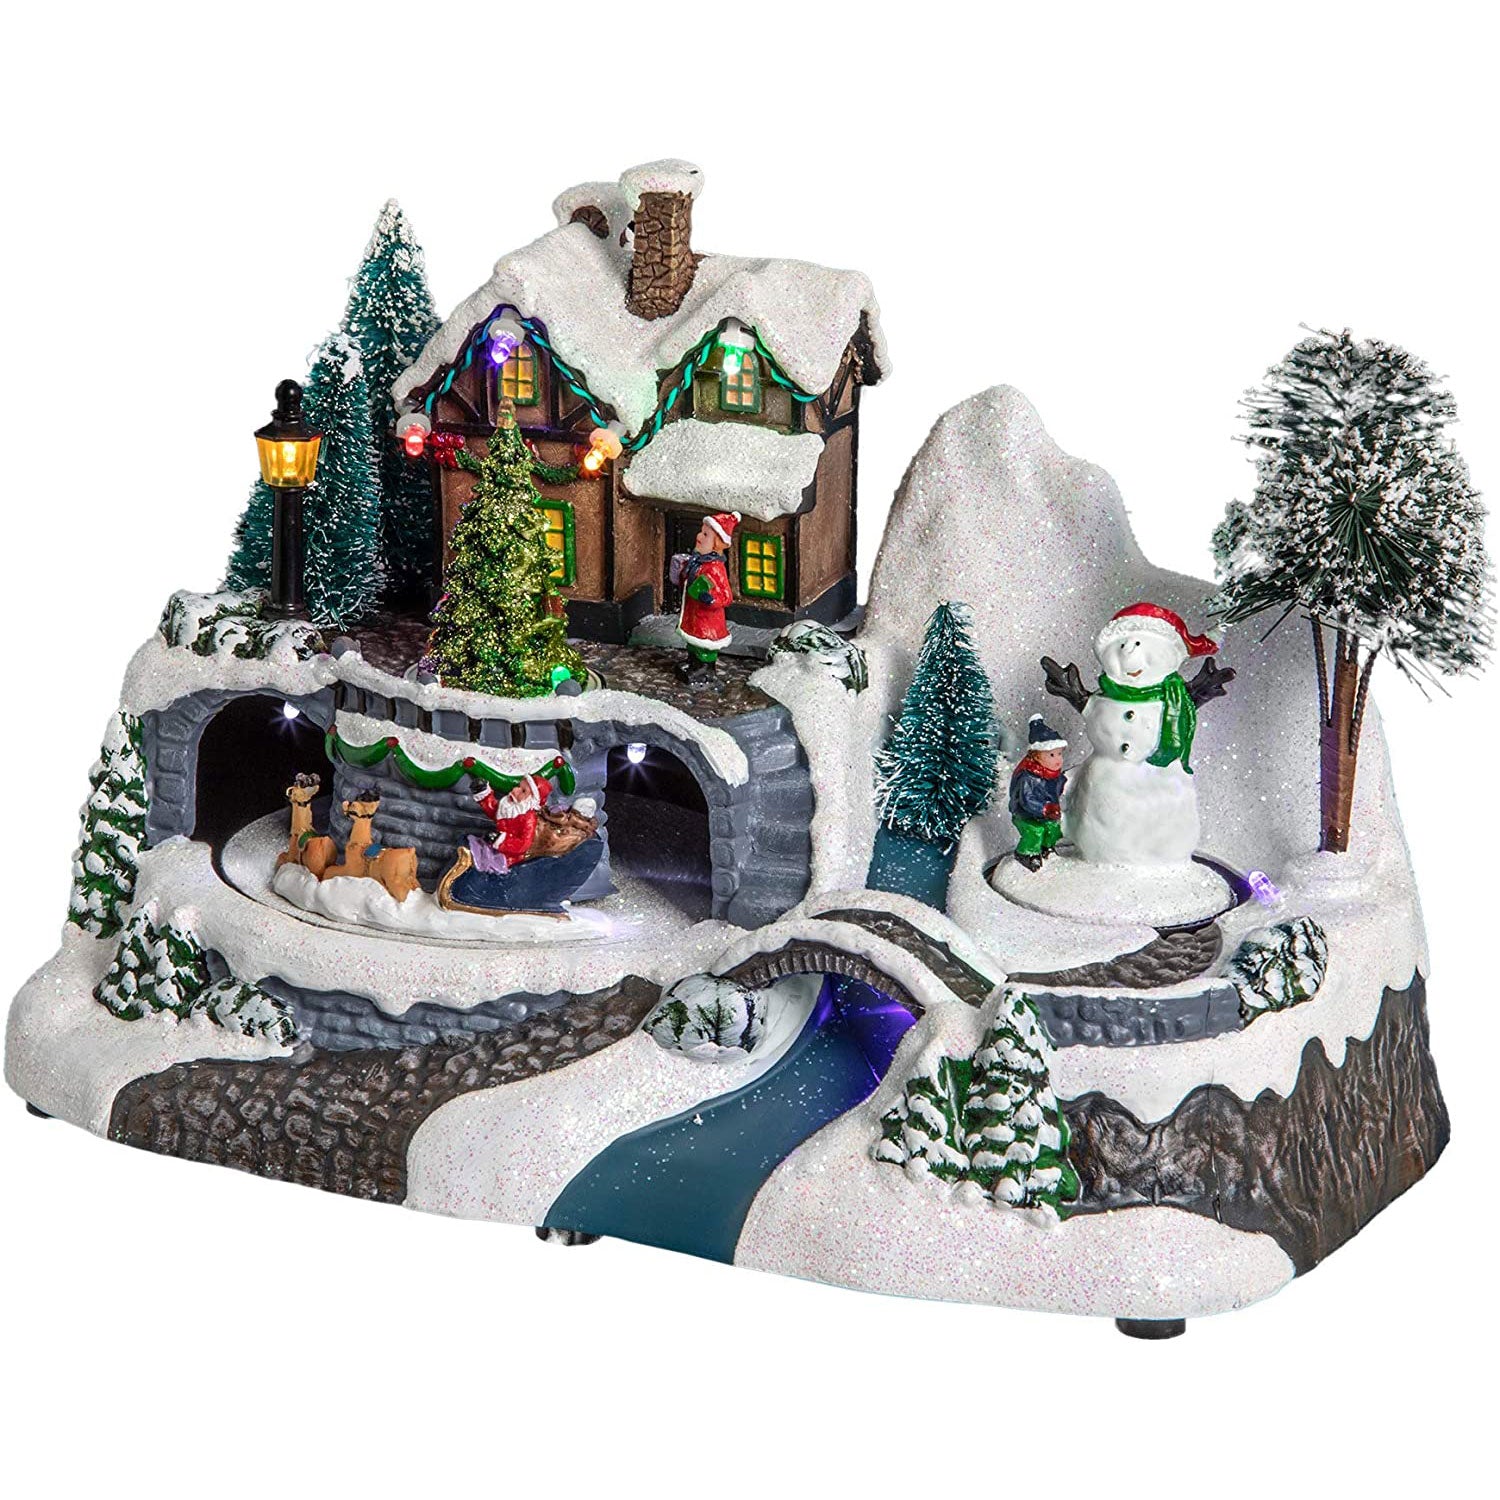 Villaggio natalizio con led Decorazione Pupazzo di neve Idea Regalo Natale 4803